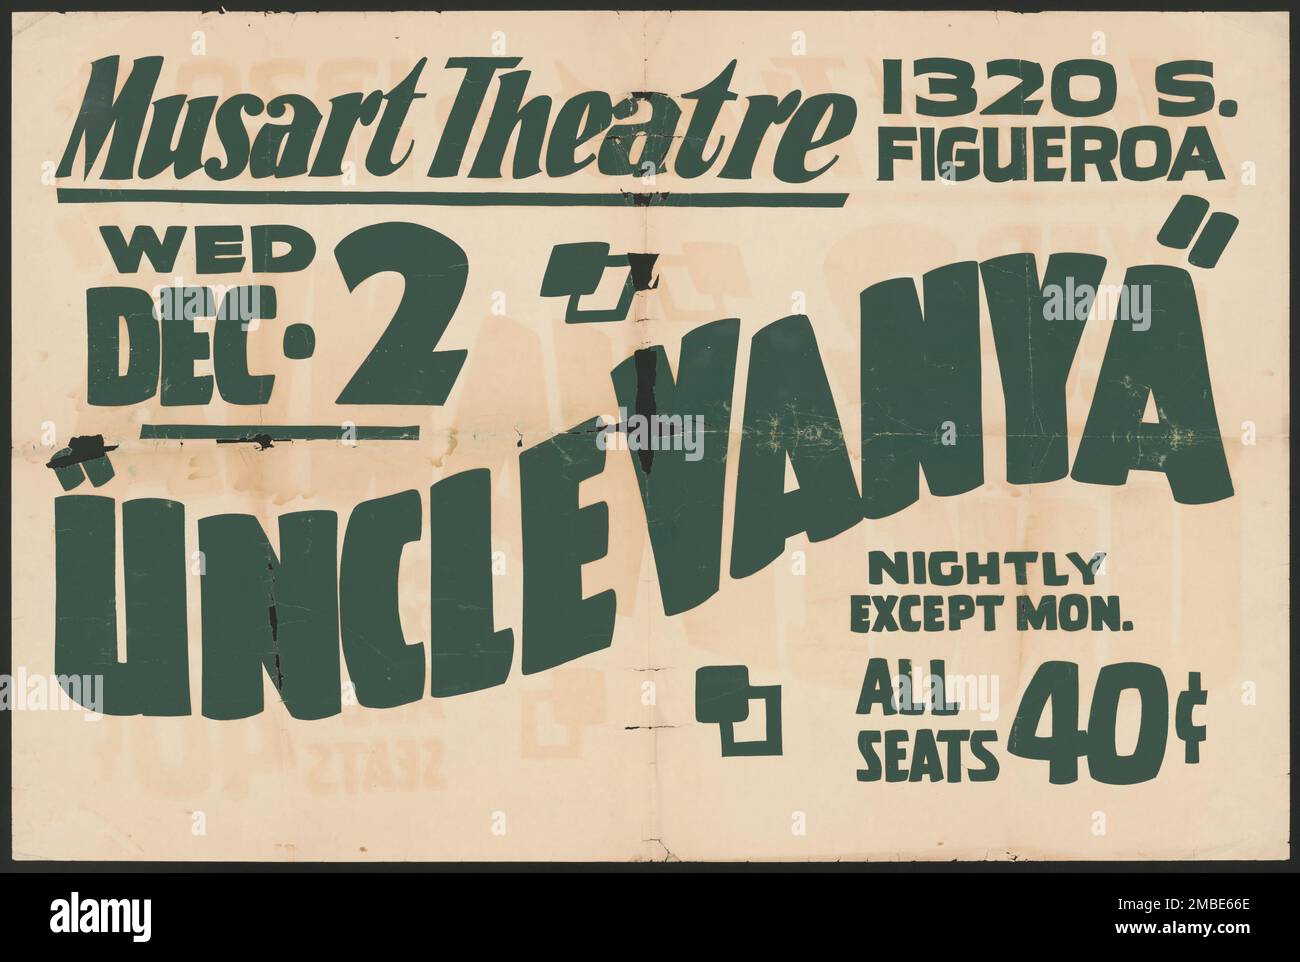 Zio Vanya, Los Angeles, [193-]. "Musart Theatre - "zio Vanya" - tutte le sere tranne il lun[giorno] - tutti i posti a sedere 40 c[ents]'. PRODUZIONE US di un gioco di Anton Chekhov. Il progetto del Teatro Federale, creato dagli Stati Uniti Works Progress Administration nel 1935, è stata progettata per conservare e sviluppare le competenze degli operai teatrali, riutilizzarle in soccorso pubblico, e per portare il teatro a migliaia negli Stati Uniti che non avevano mai visto prima spettacoli teatrali dal vivo. Foto Stock